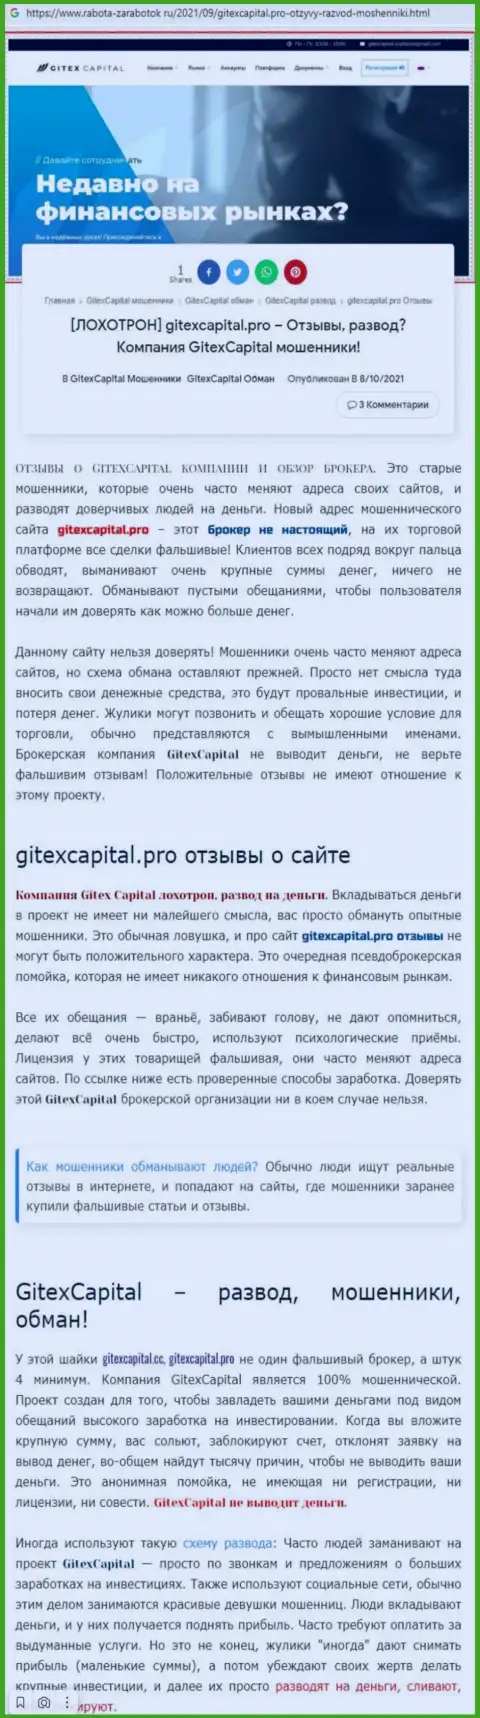 Мошенничают, нагло обдирая клиентов - обзор деятельности GitexCapital Pro